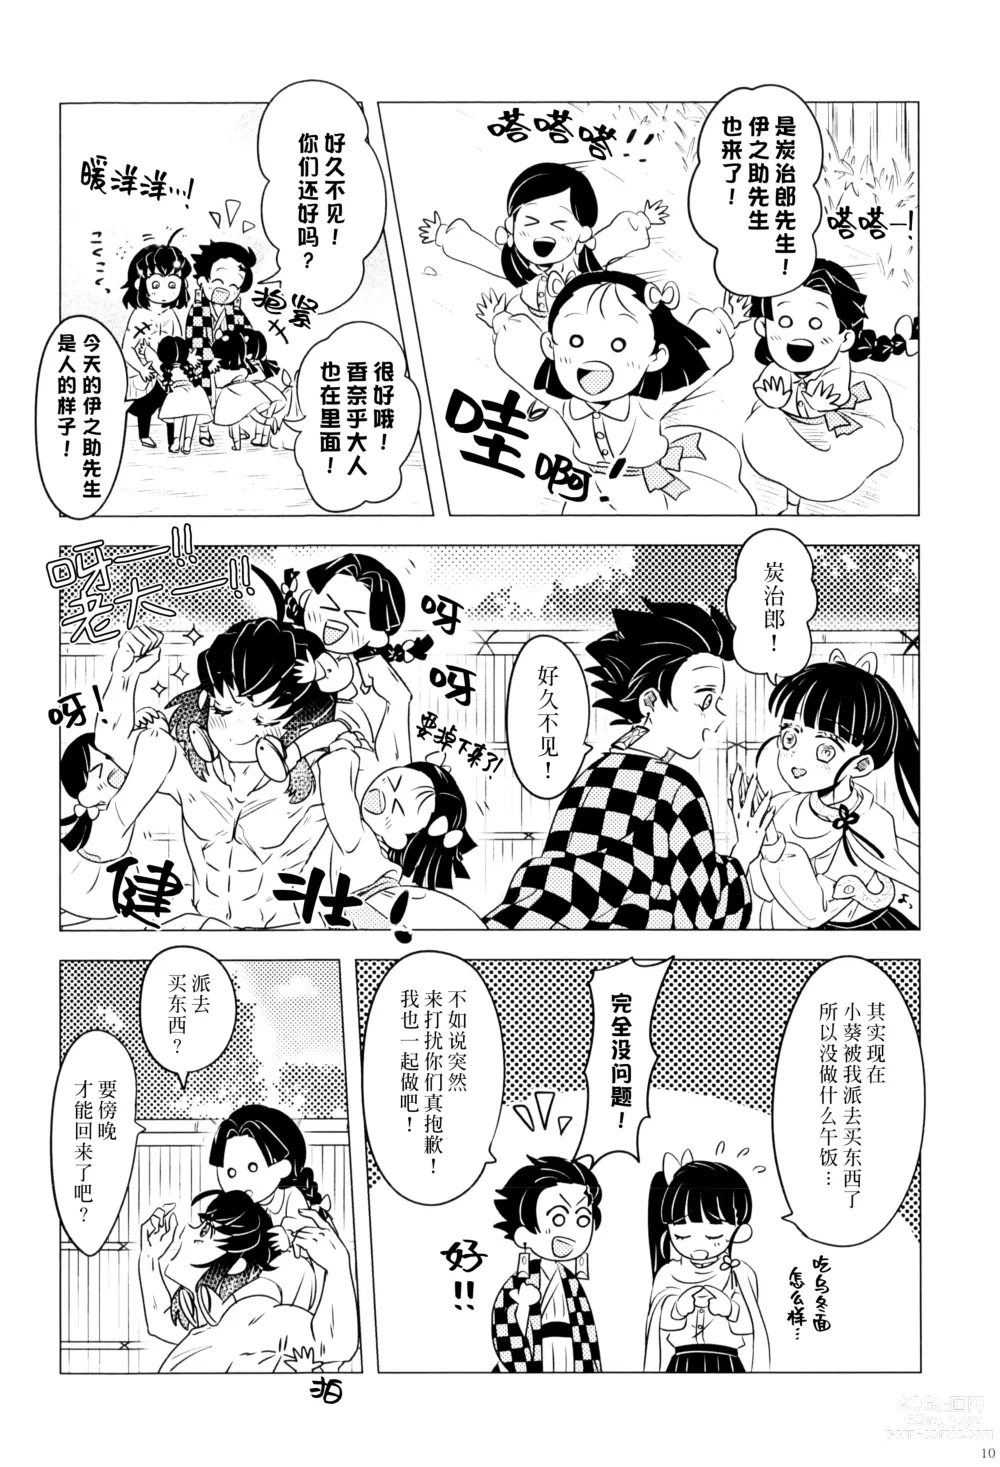 Page 12 of doujinshi 风起云涌